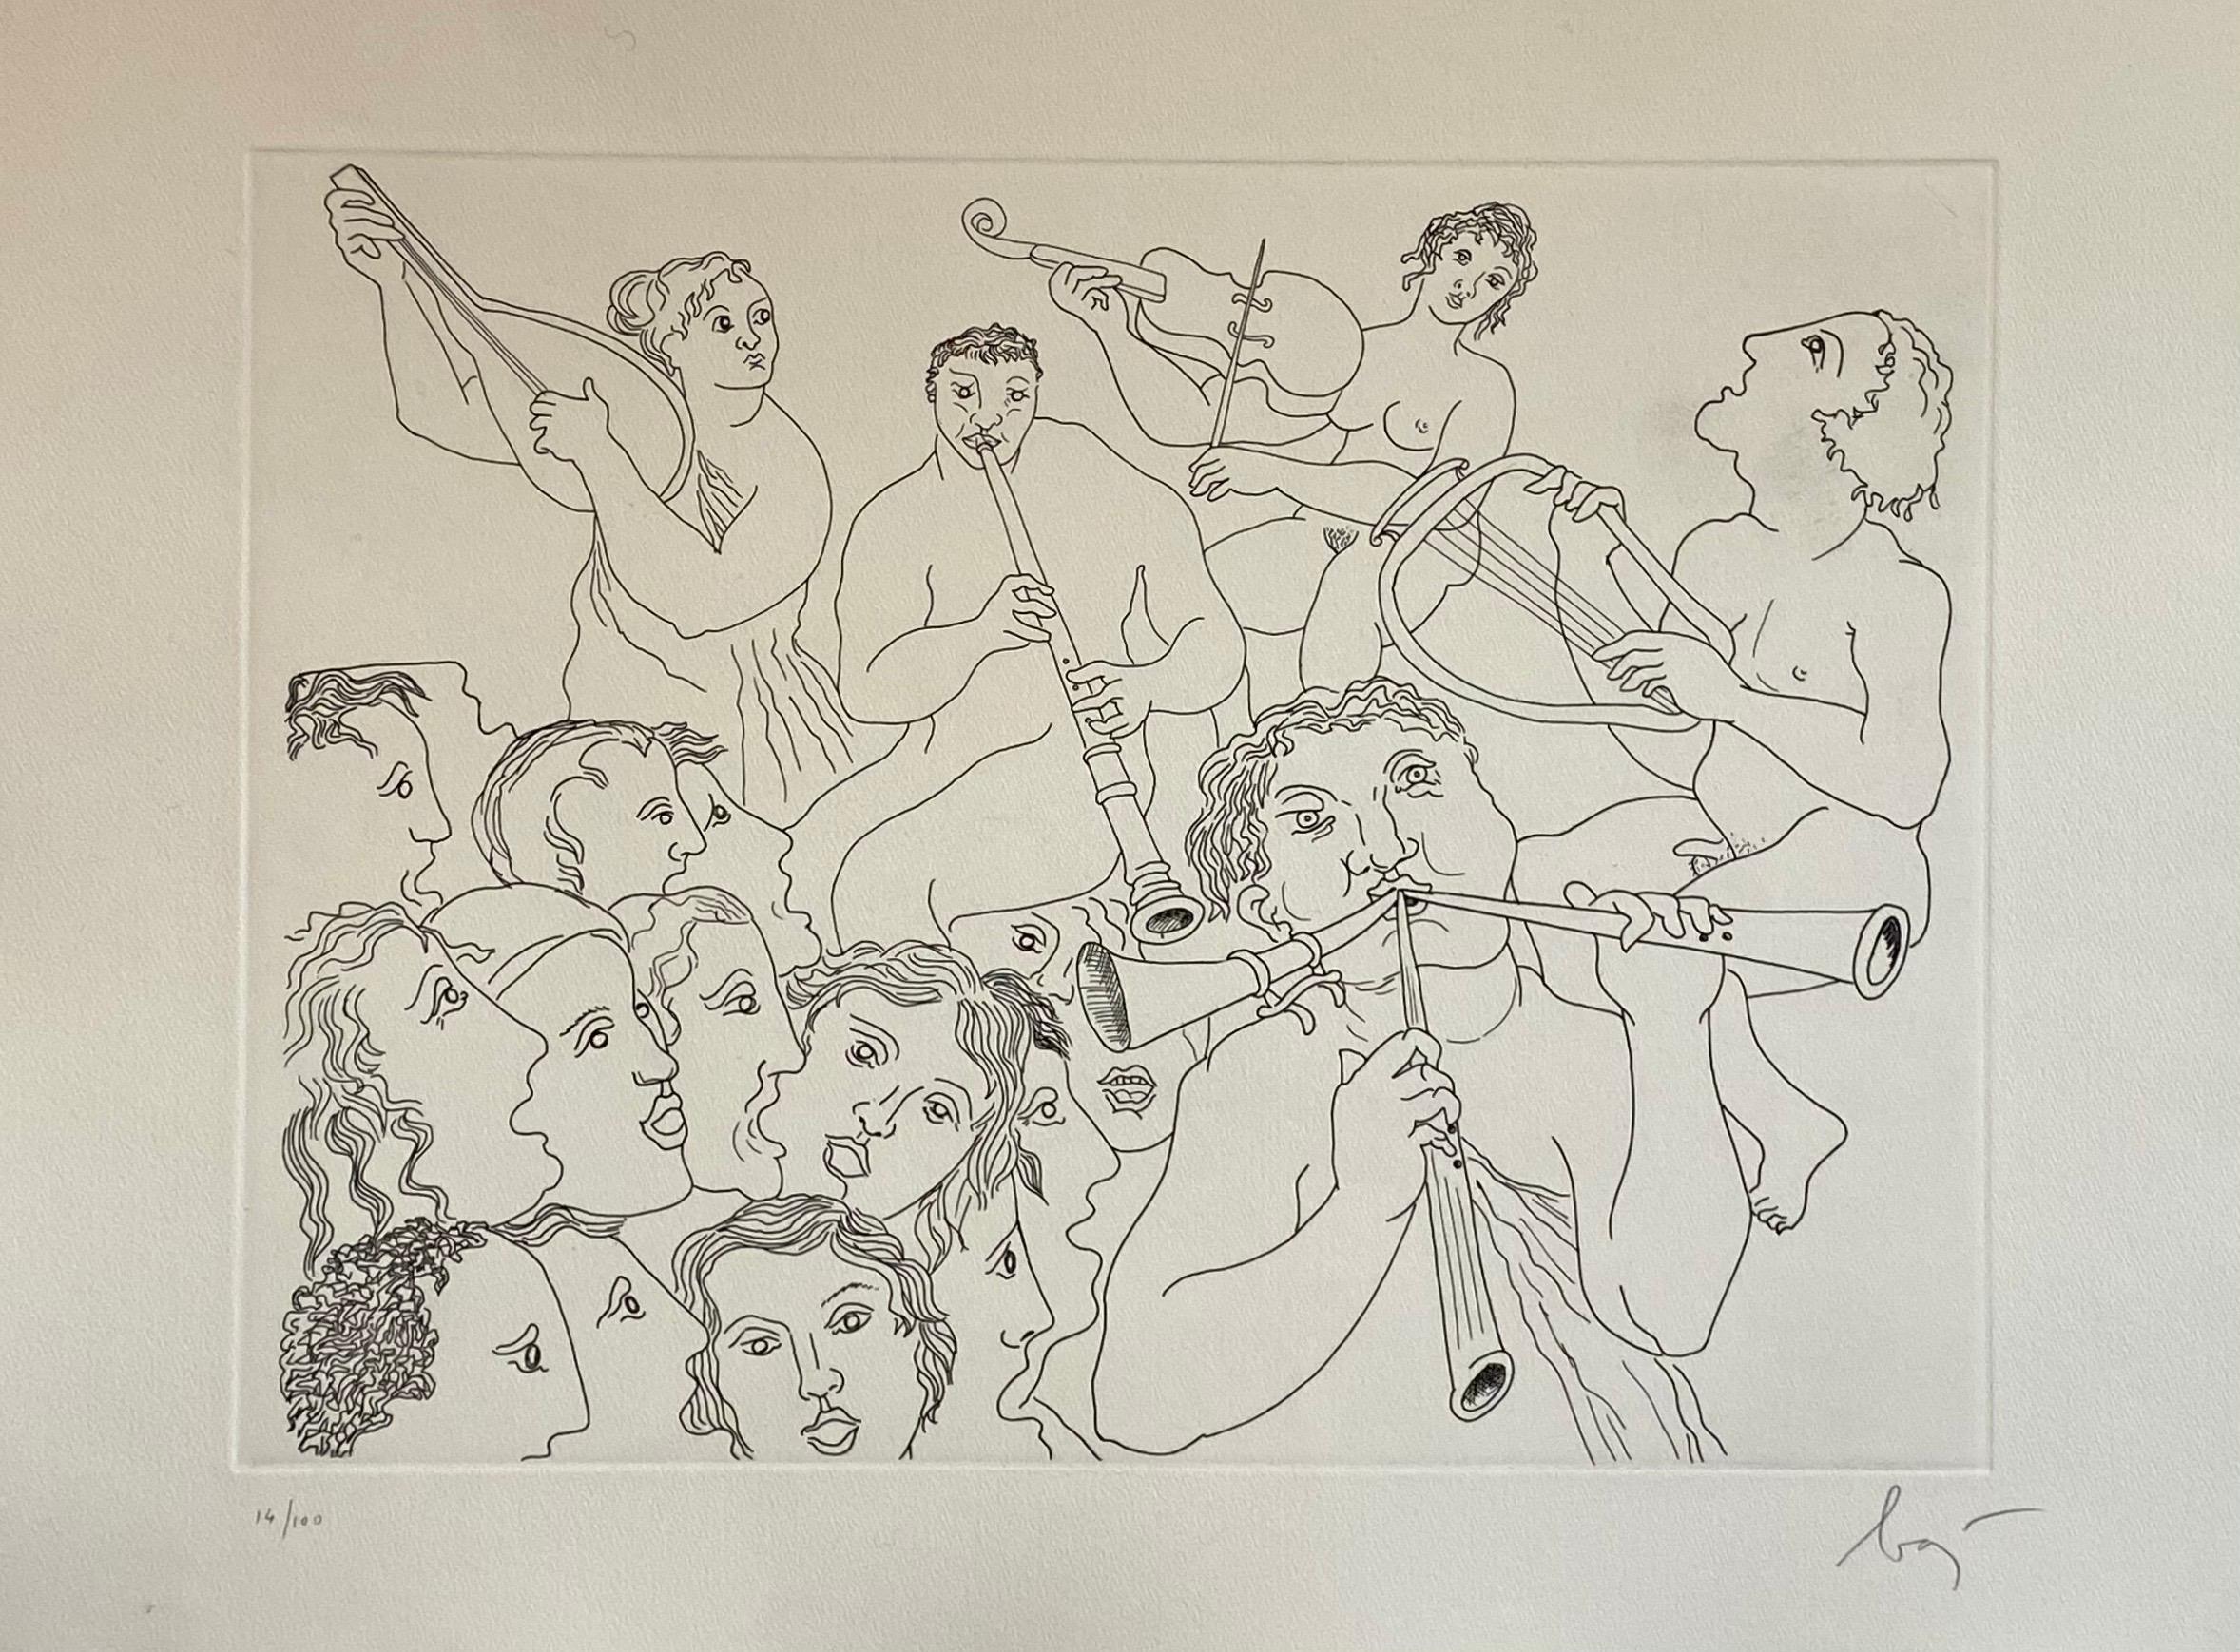 Enrico Baj (1924-2003) Italien, impression à tirage limité. 
Signé et numéroté à la main au crayon, édition limitée à 100 exemplaires
Gravure à l'eau-forte 
Taille de l'image : cm 39,5 x 29,5, feuille cm 53 x 39


L'artiste italien Enrico Baj